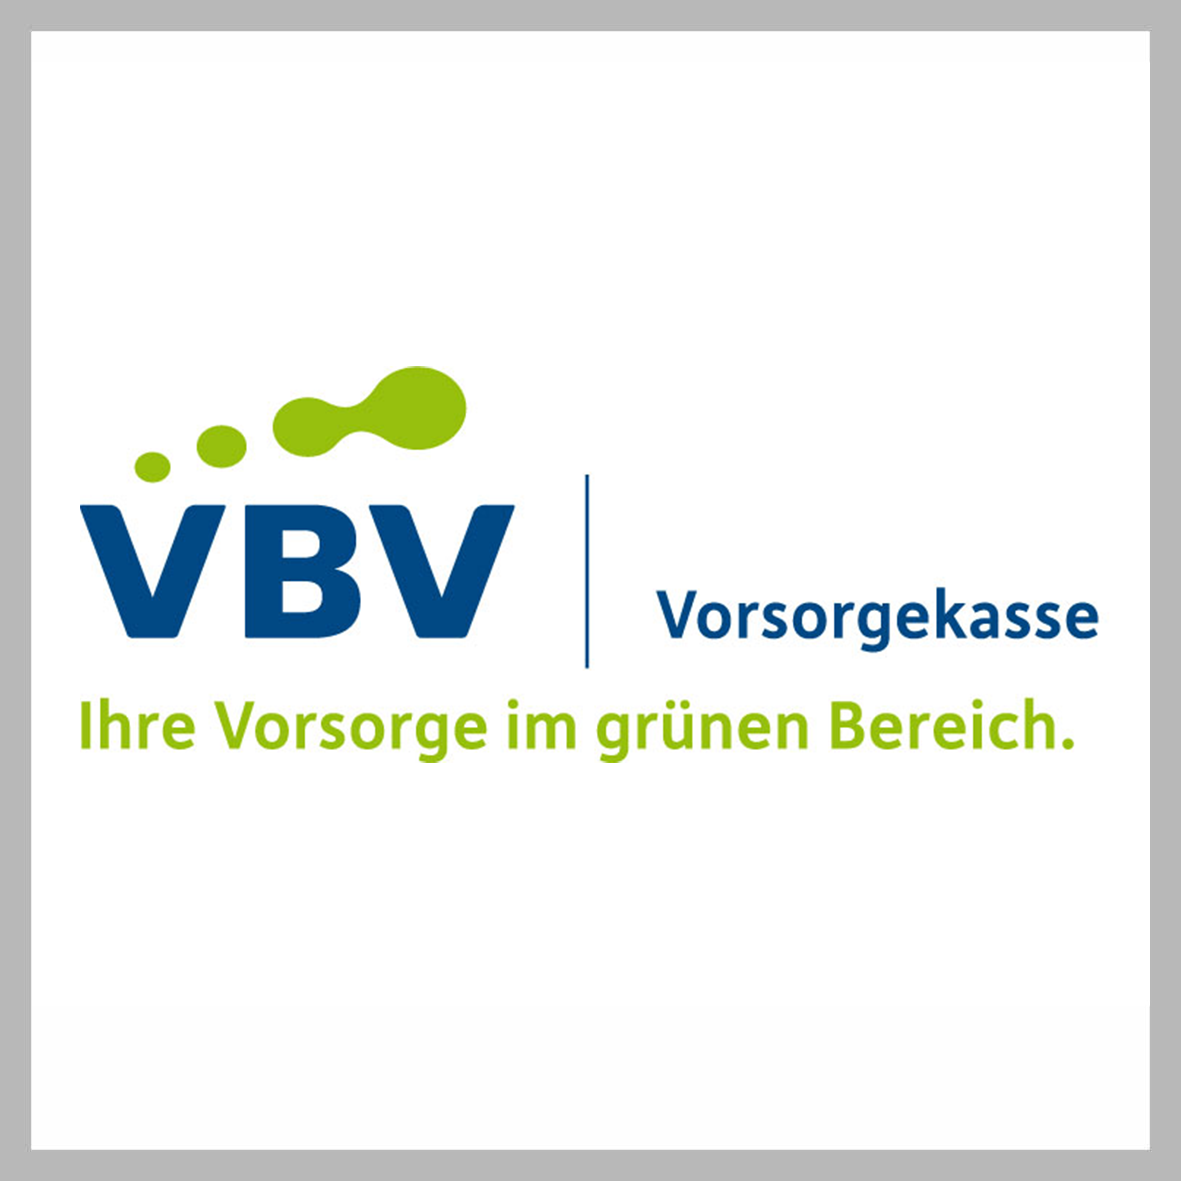 Logo vbv Vorsorgekasse in Farbe auf weiß, quadratisch, grau umrandet